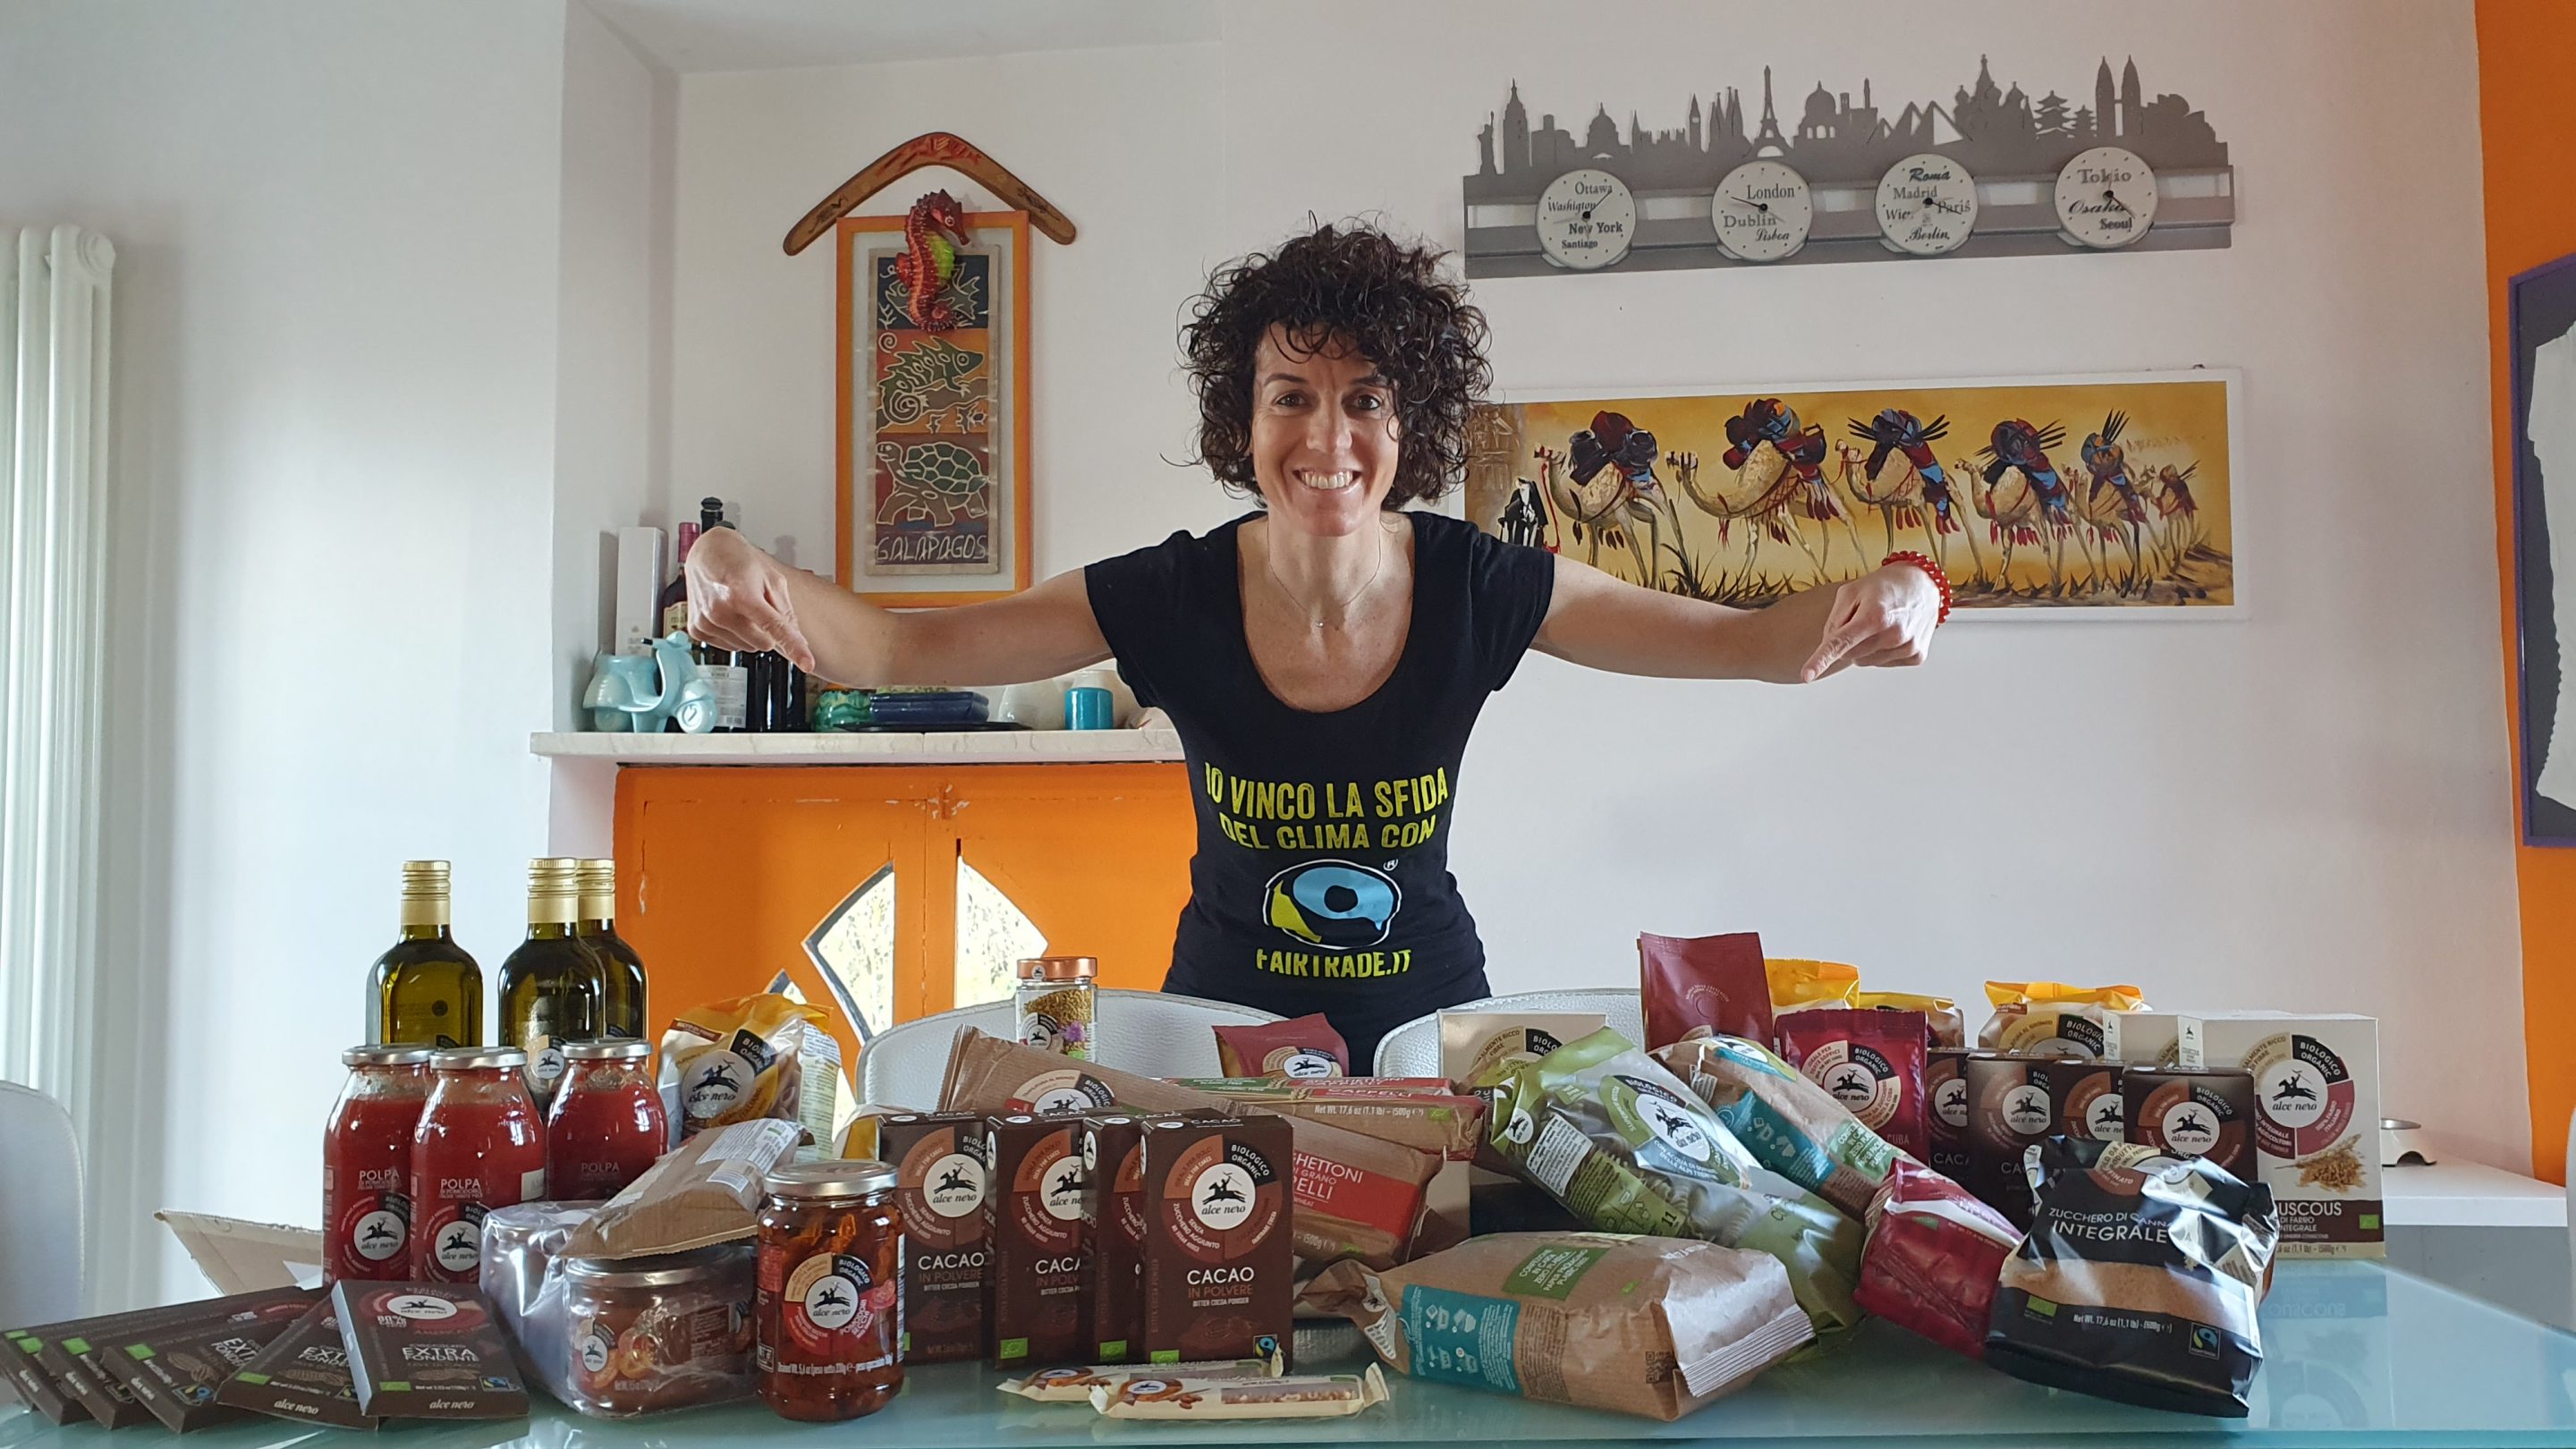 Alce Nero e Fairtrade insieme per Paola Gianotti